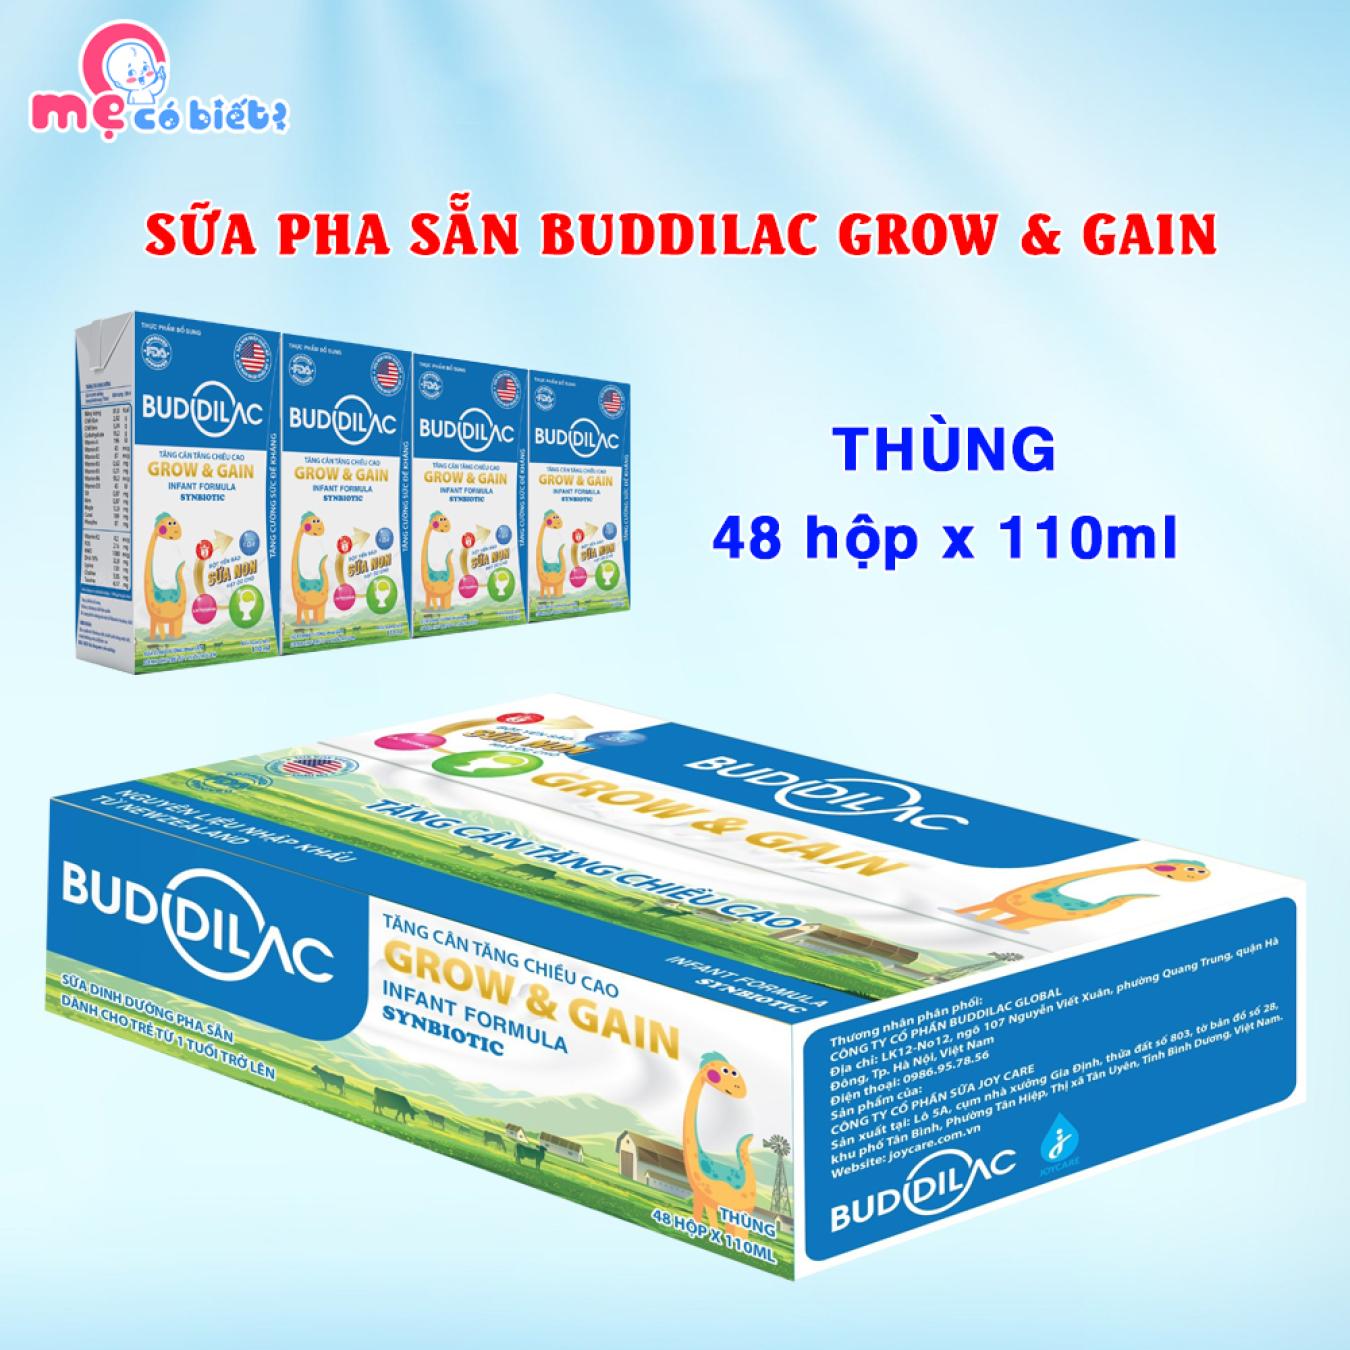 Sữa công thức pha sẵn Buddilac Grow & Gain – Tăng cân, tăng chiều cao